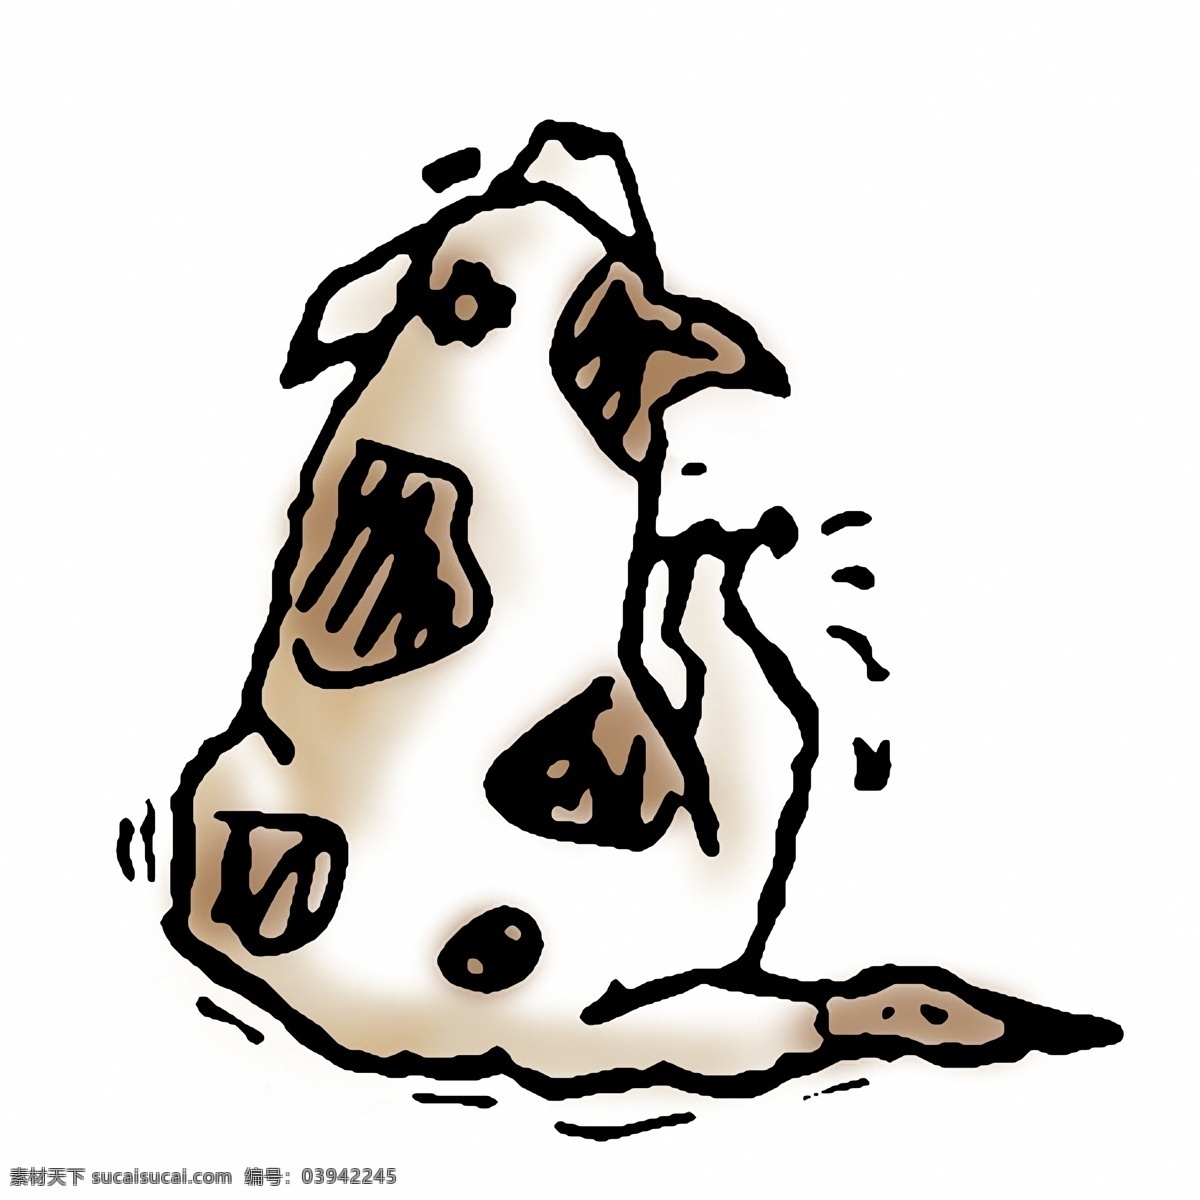 幽默 插画 设计素材 家禽家畜 动物插图 书画美术 白色